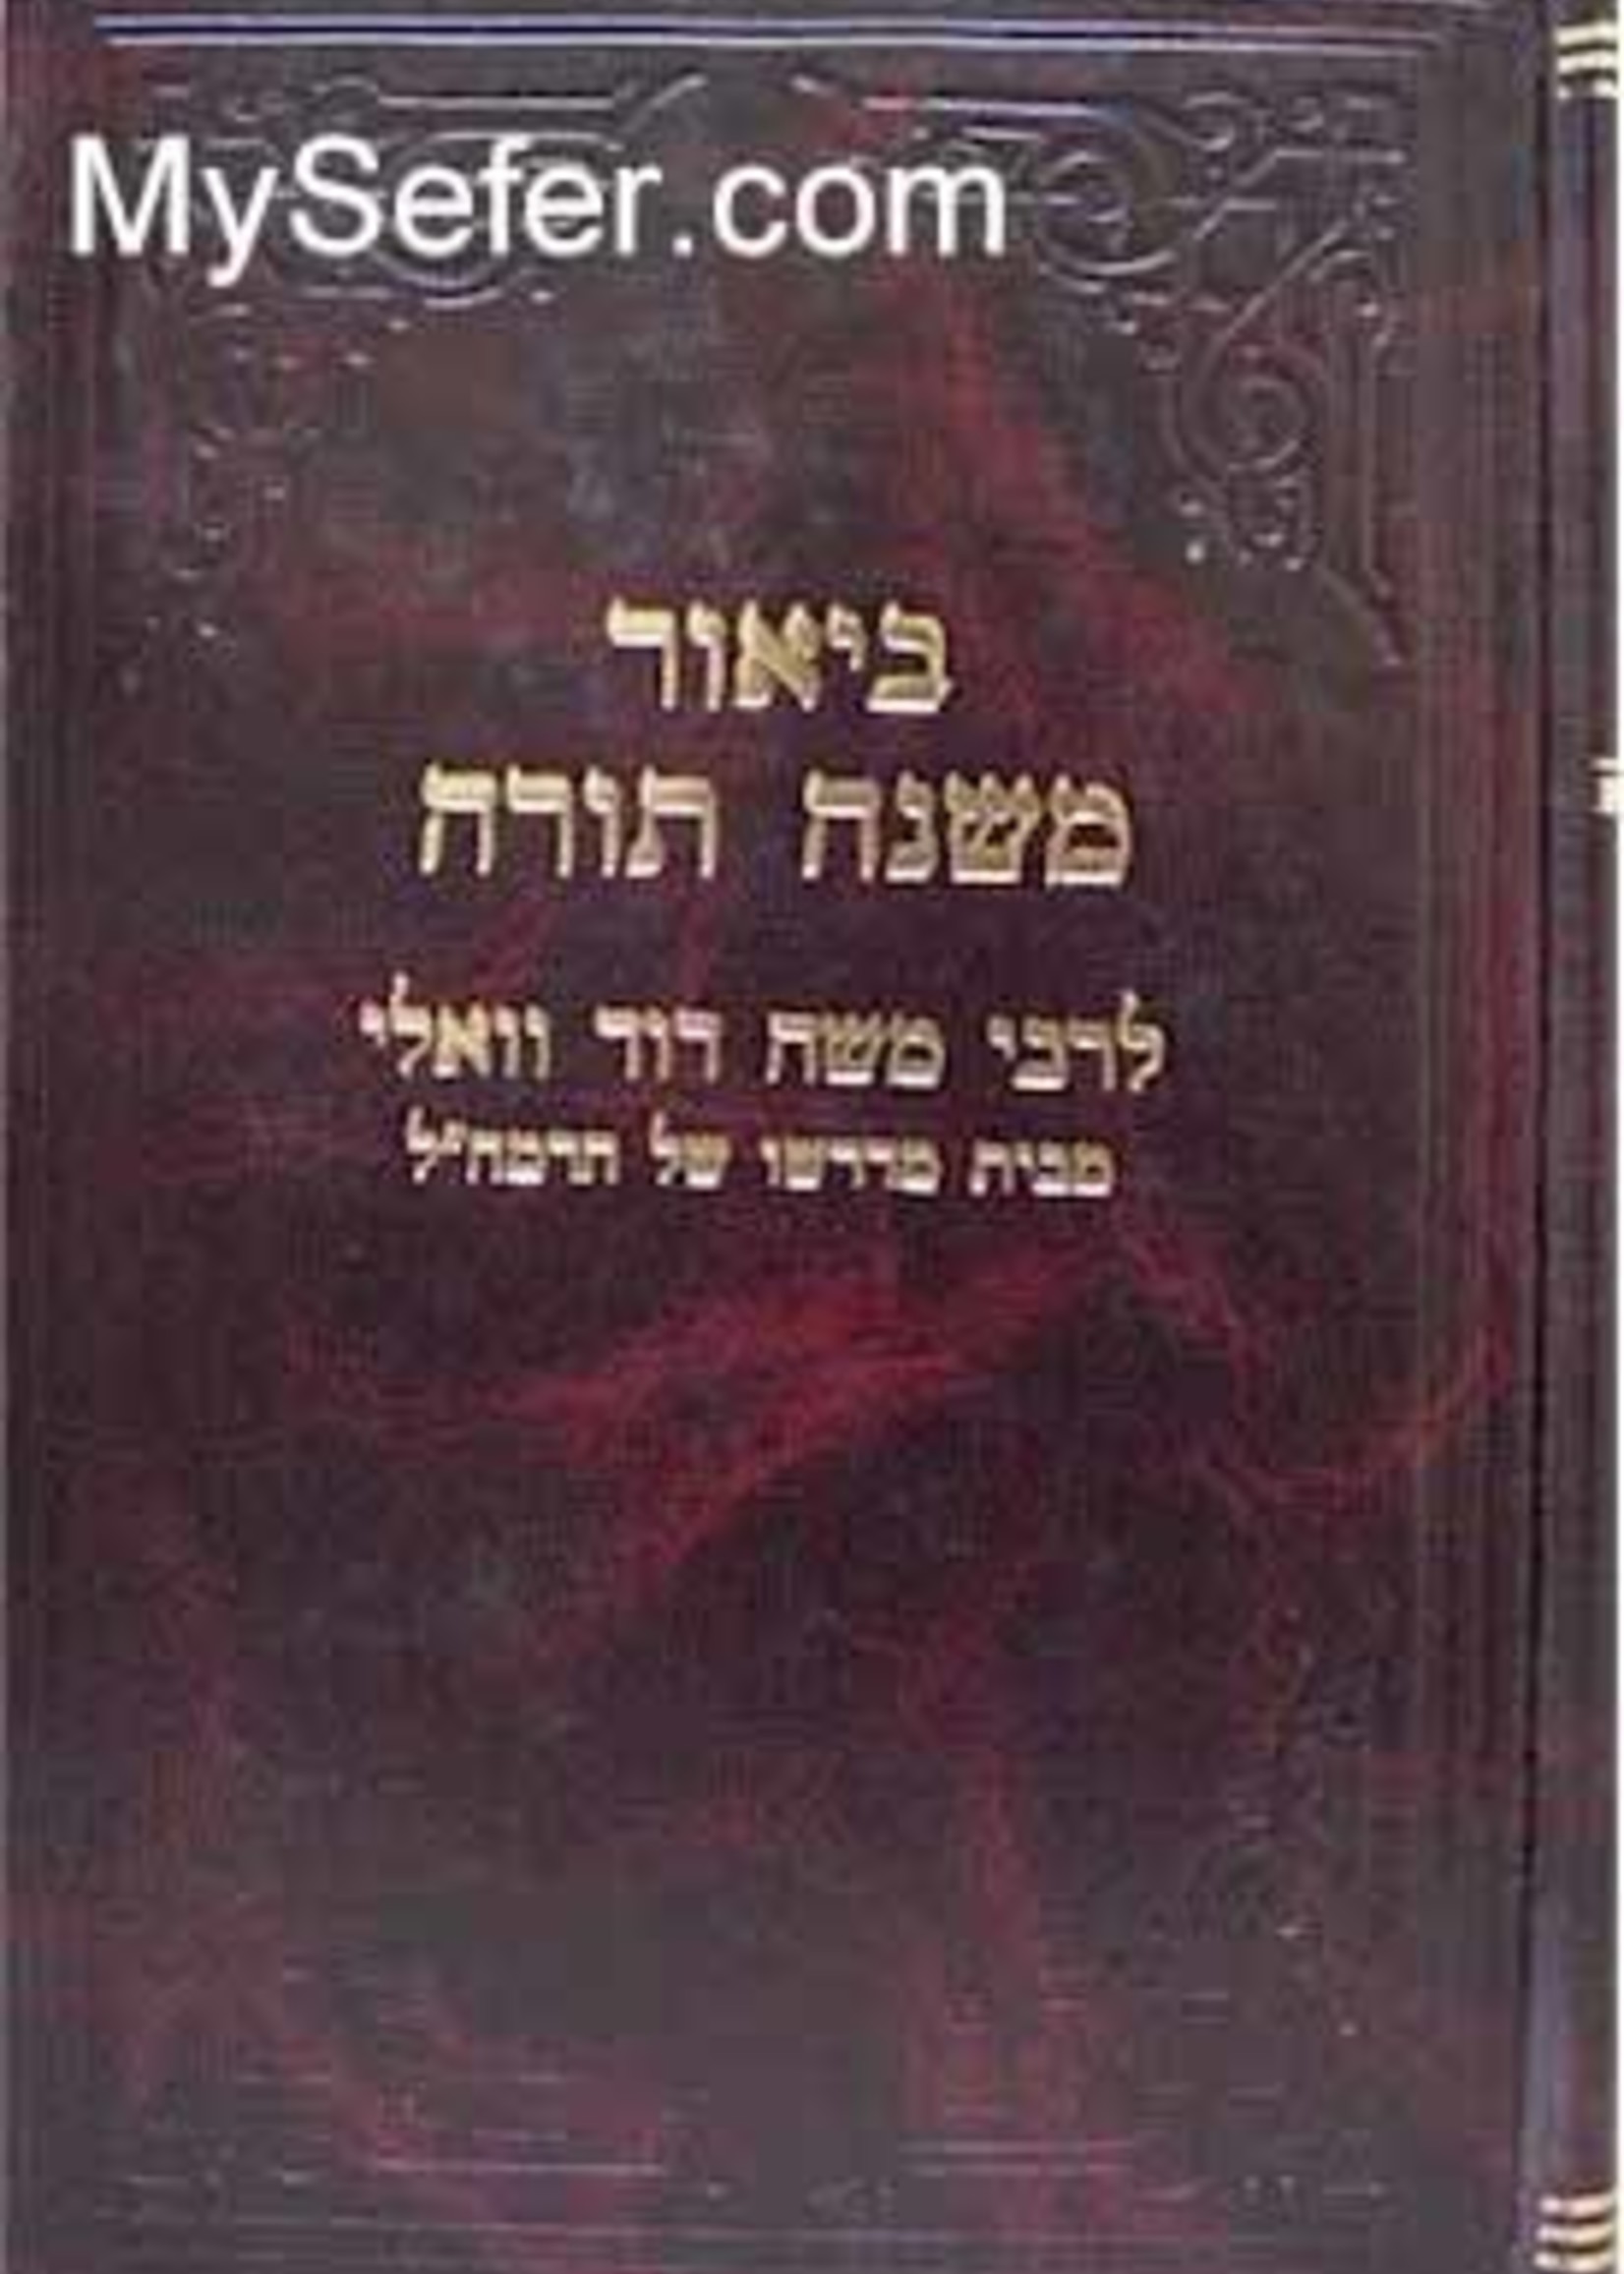 Rabbi Moshe David Valle - Beiur Mishneh Torah (Devarim vol. 2)/ ביאור משנה תורה ספר דברים לרבי משה דוד וואלי